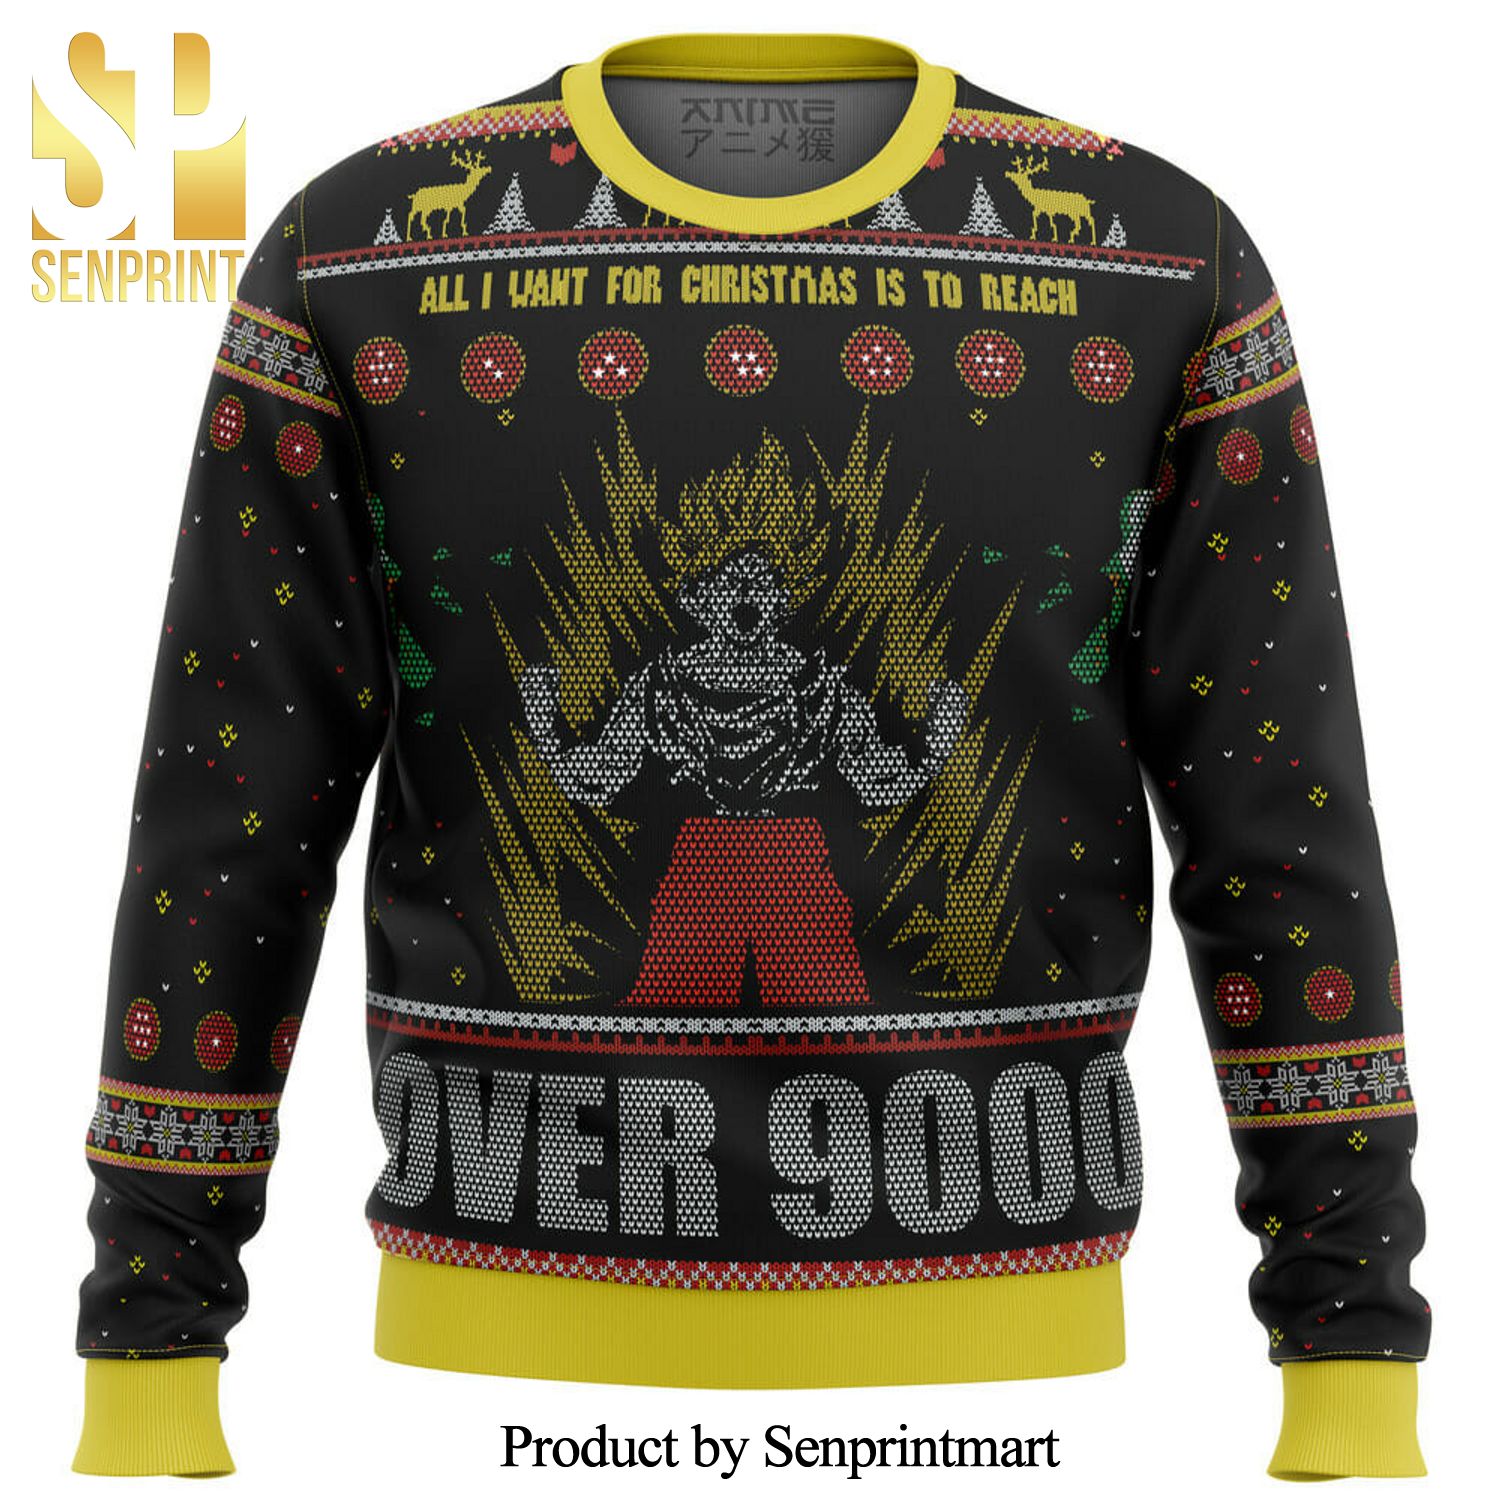 Dragonball Z Goku Over 9000 Manga Anime Knitted Ugly Christmas Sweater